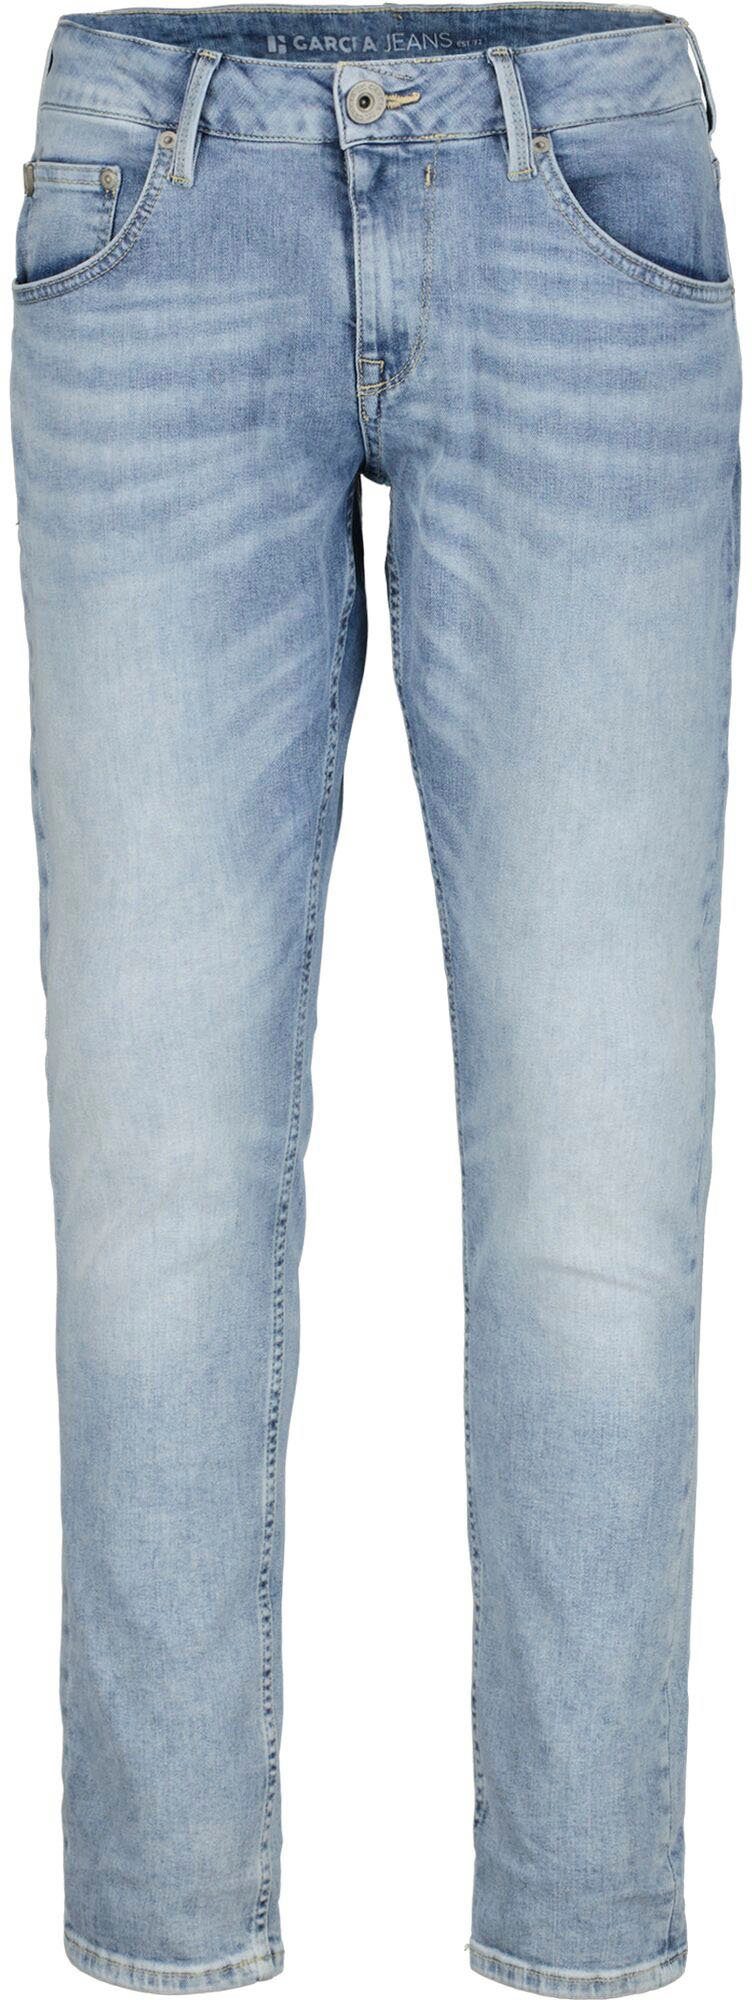 Garcia 5-Pocket-Jeans in Rocko verschiedenen bleached Waschungen